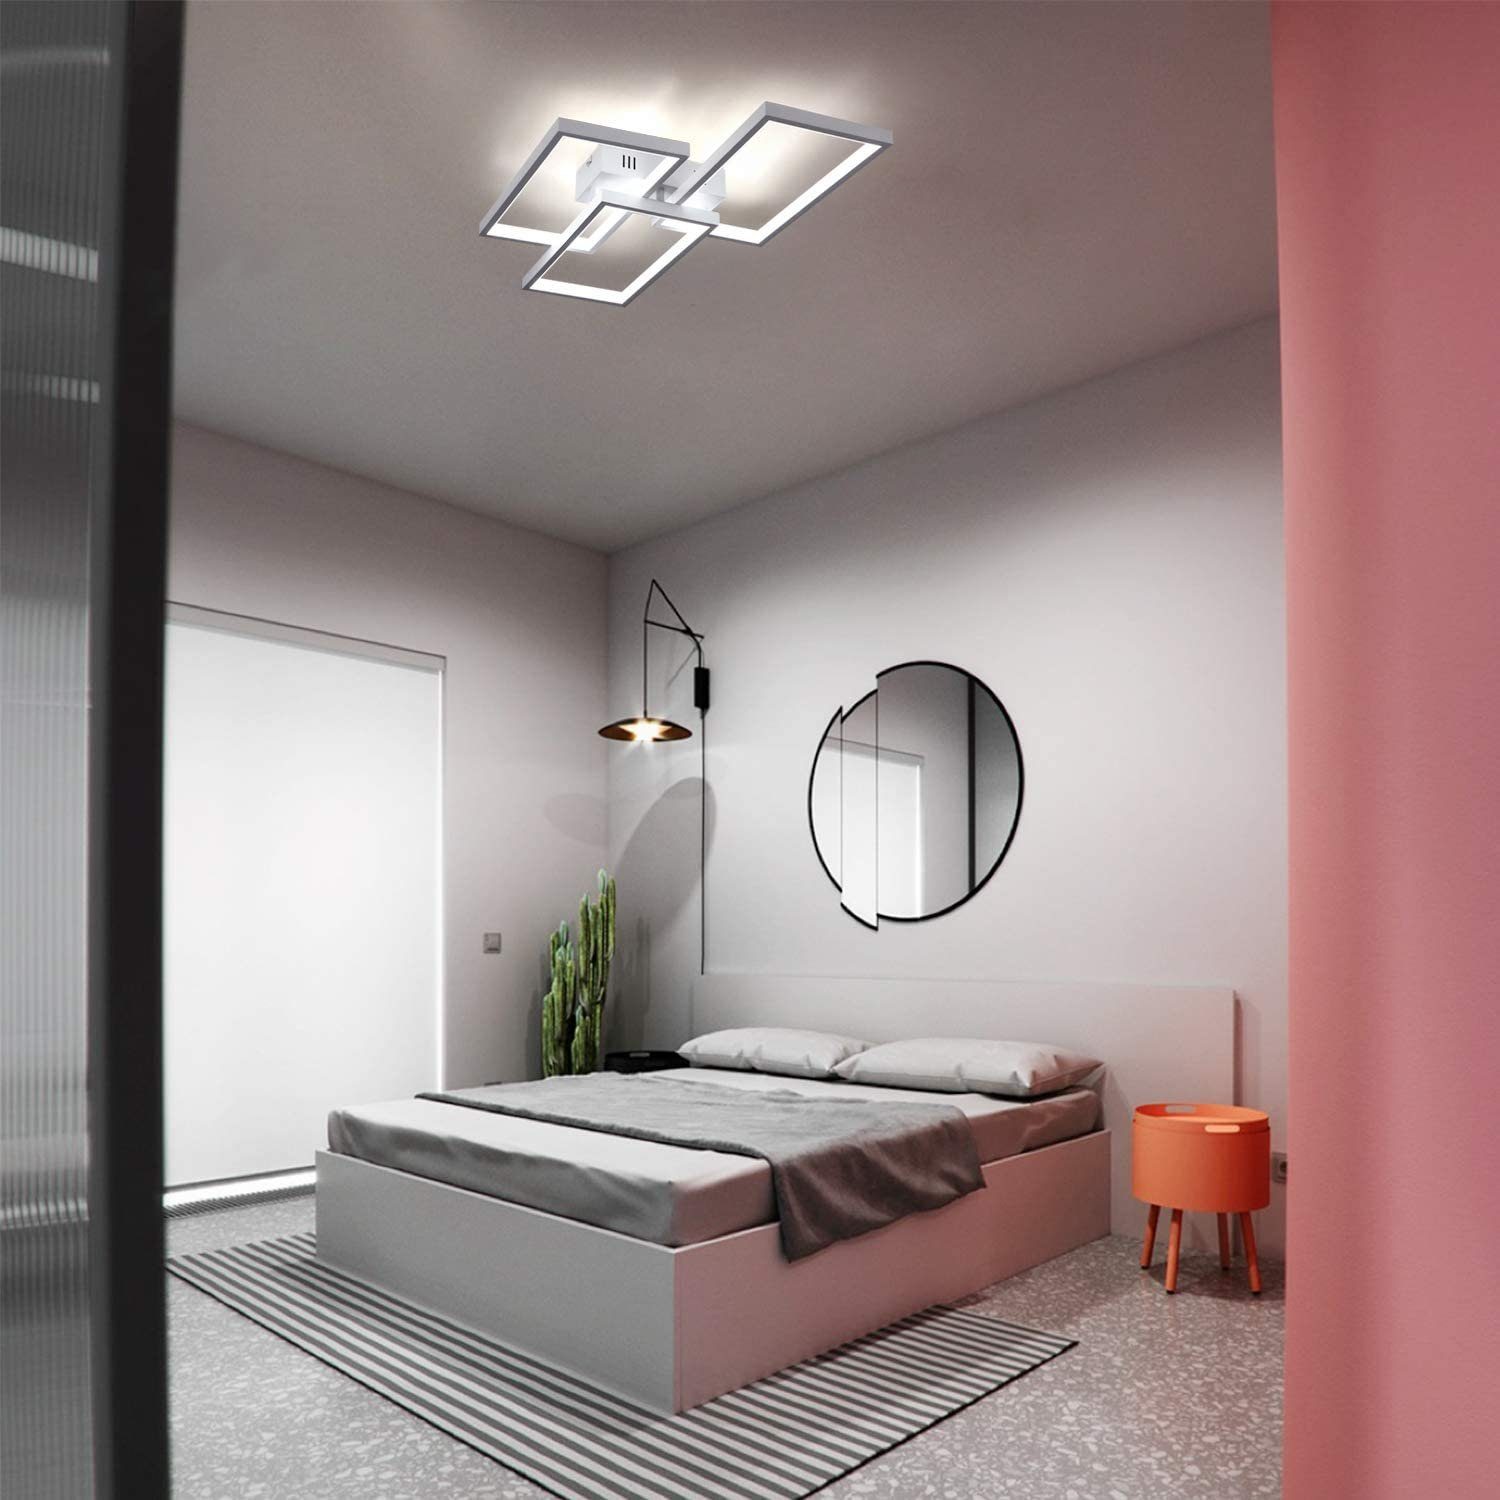 ZMH LED Weiße fest Wohnzimmerlampe, integriert, LED dimmbar Deckenleuchte 63W mit Fernbedienung